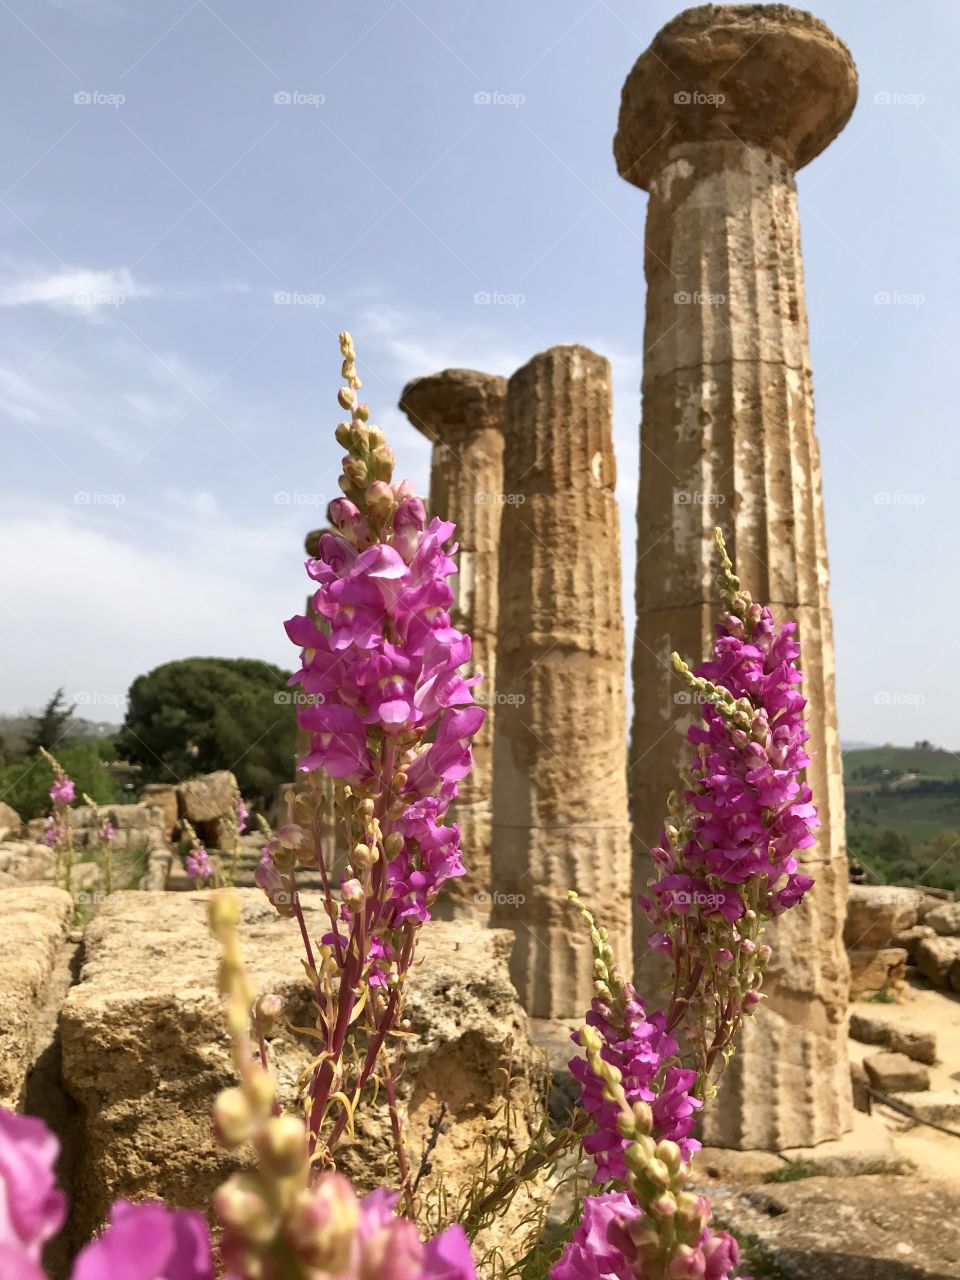 Sicilia’s flowers